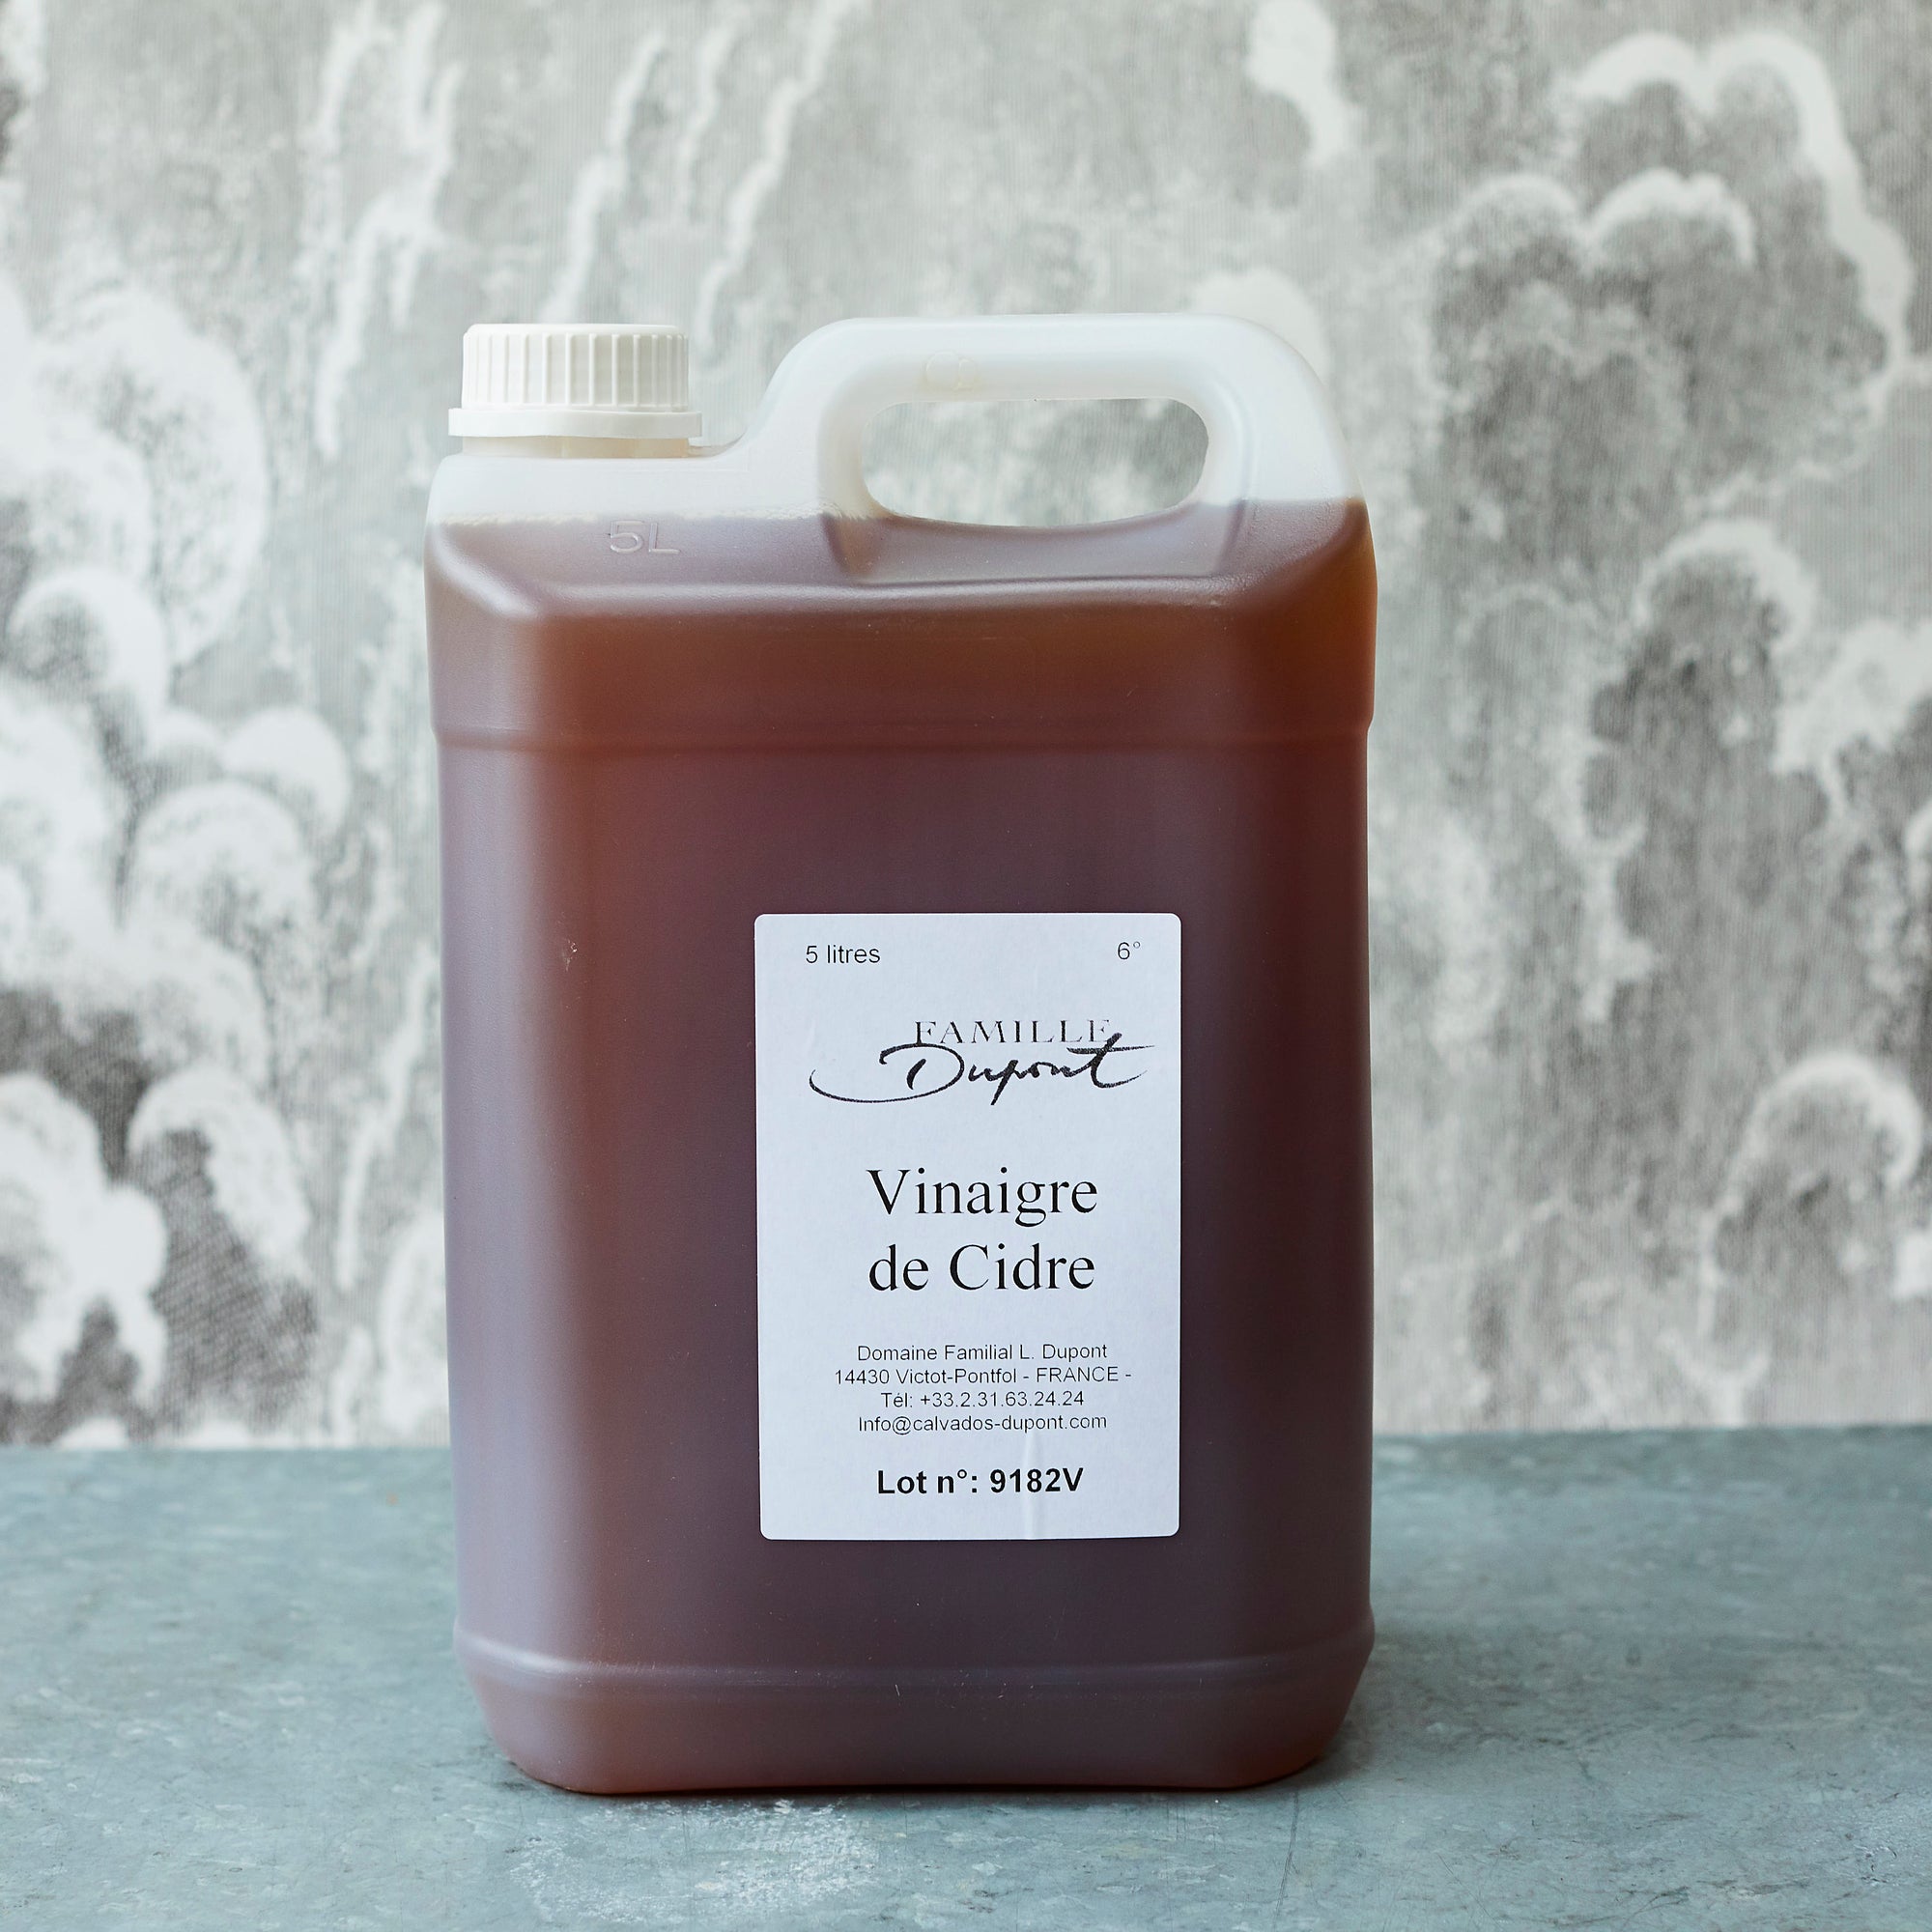 Apple Cider Vinegar with 'Mother' - Vinegar Shed